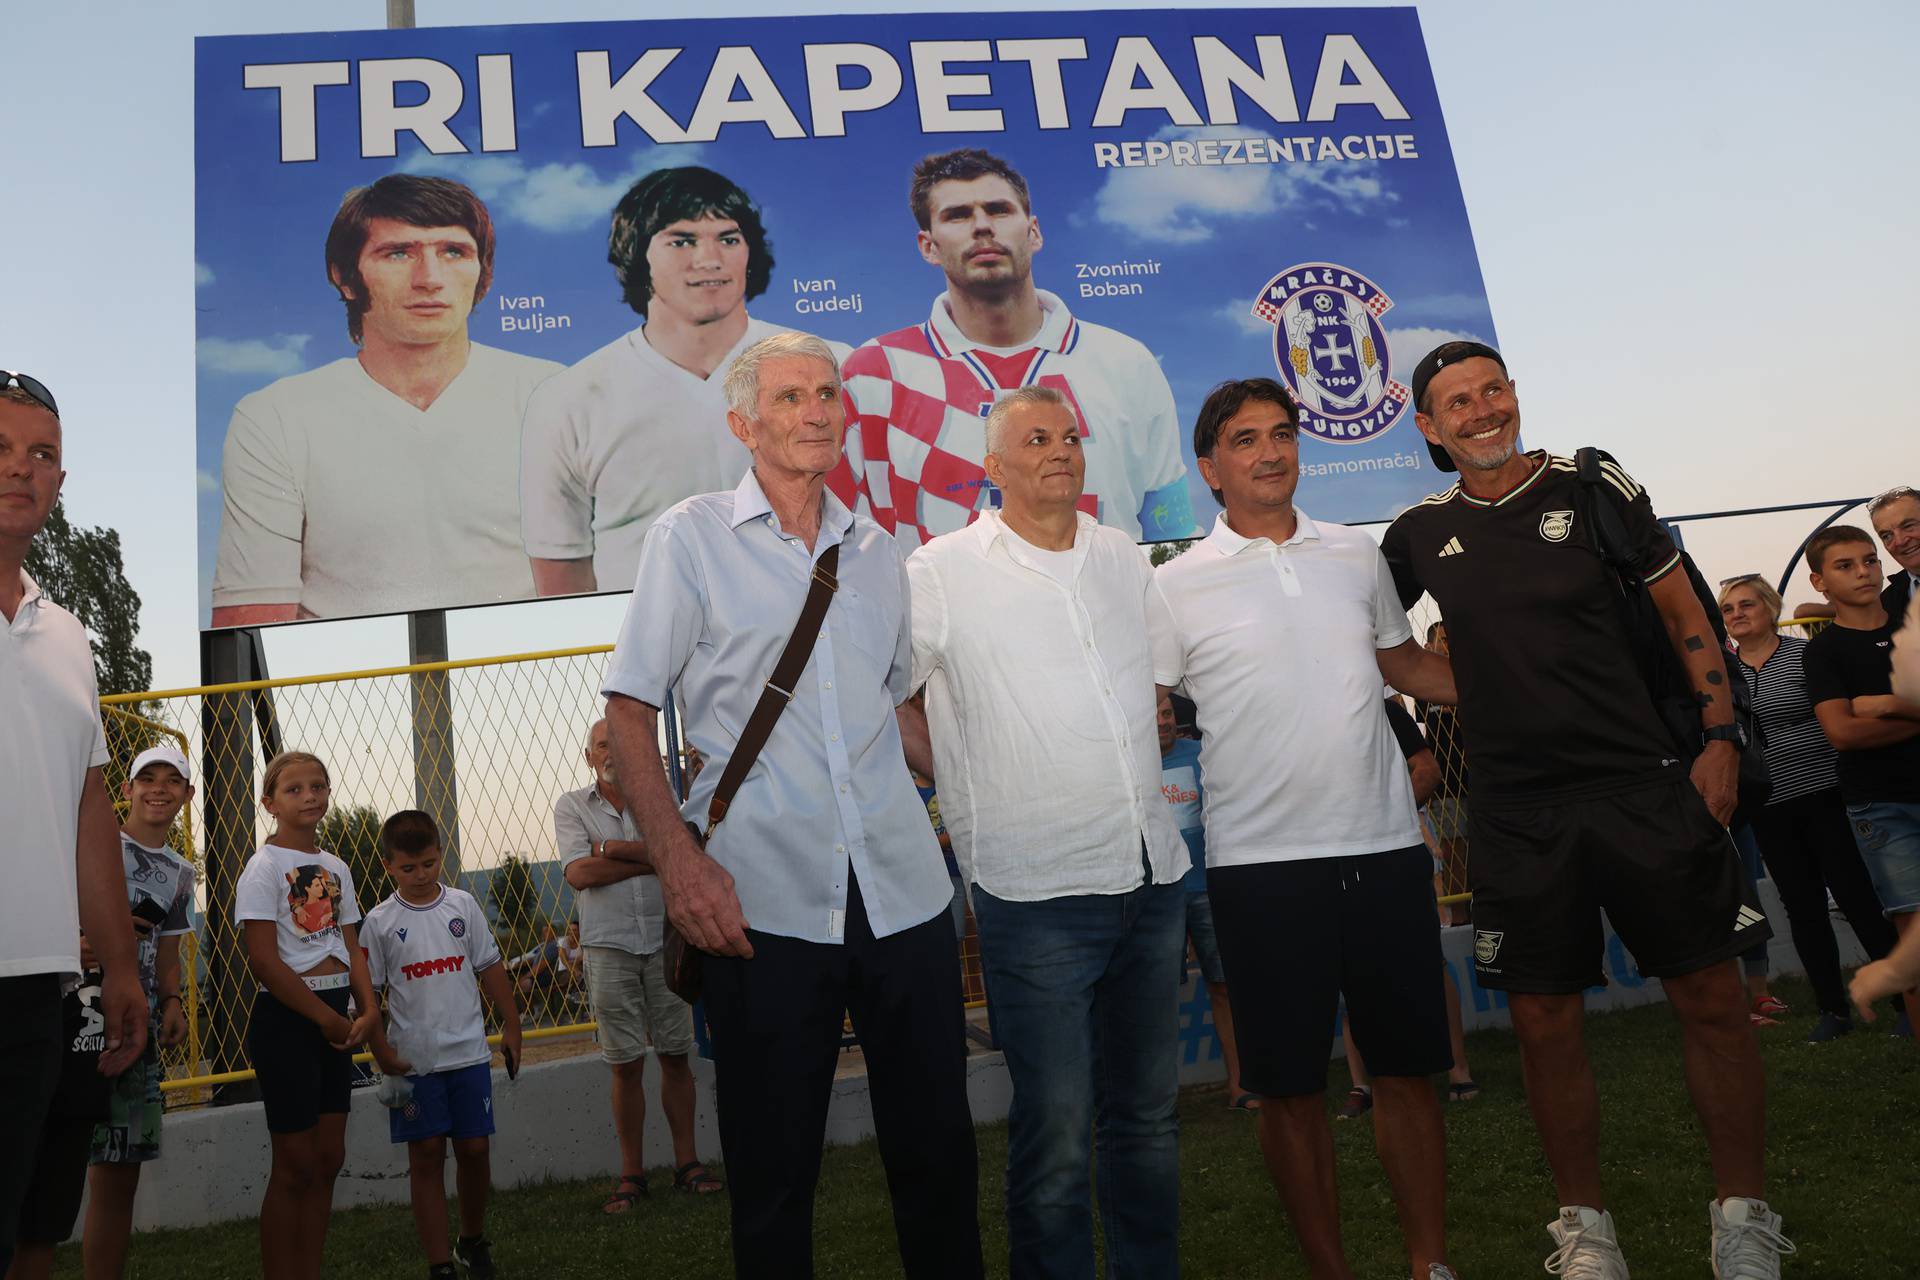 Svečanost u Općini Runovići gdje igra nogometni klub Mračaj